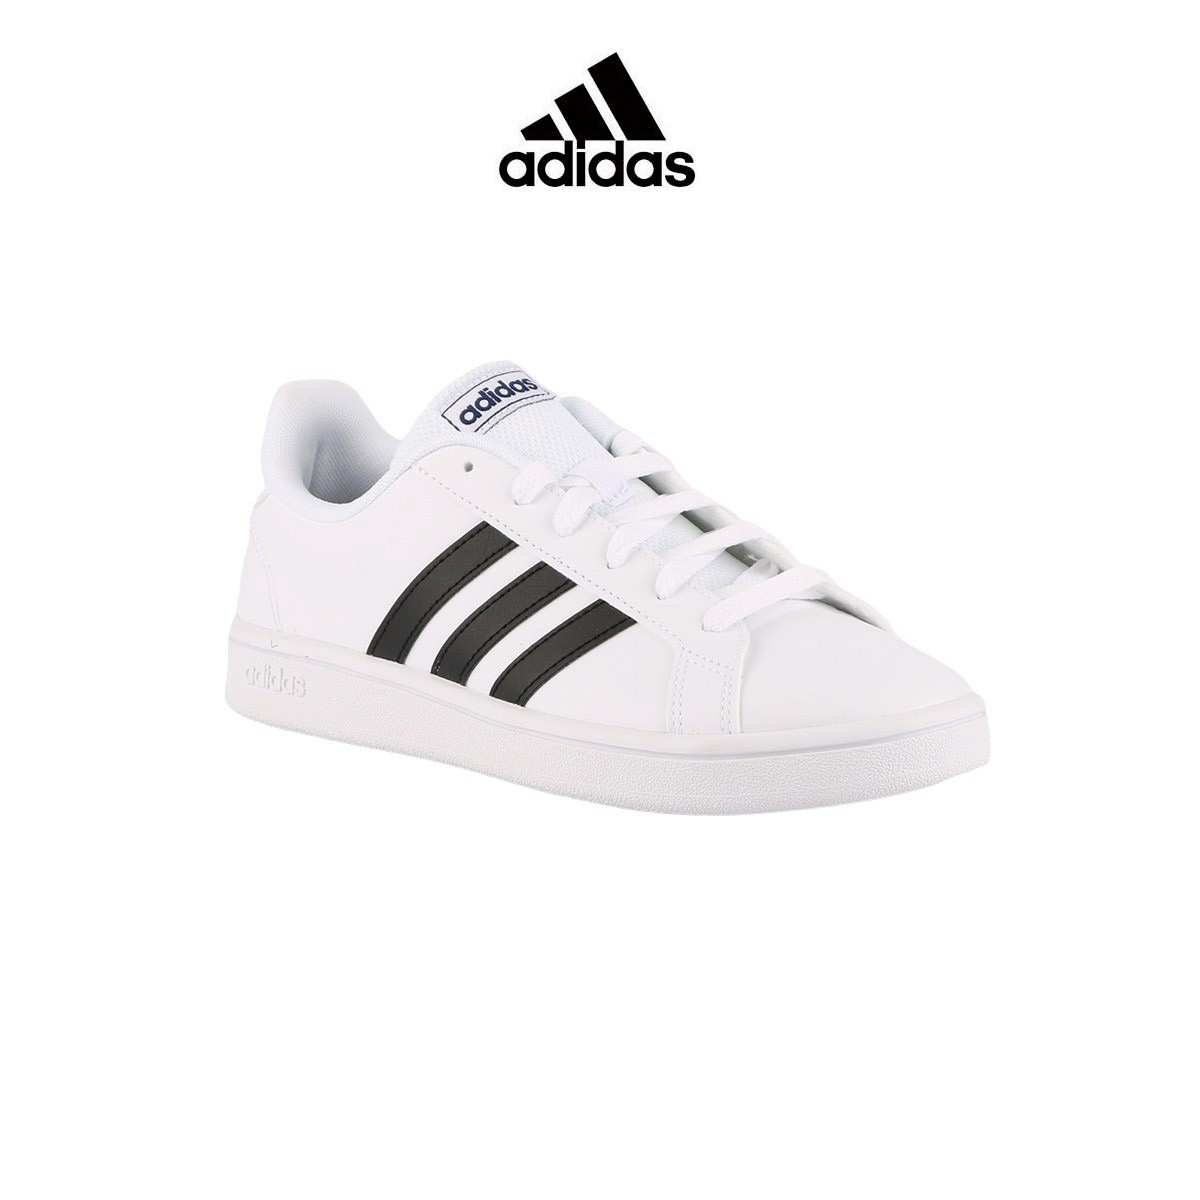 cristal cantidad de ventas Prominente Adidas zapatilla Grand Court Base White Black Blanco bandas negras Hombre